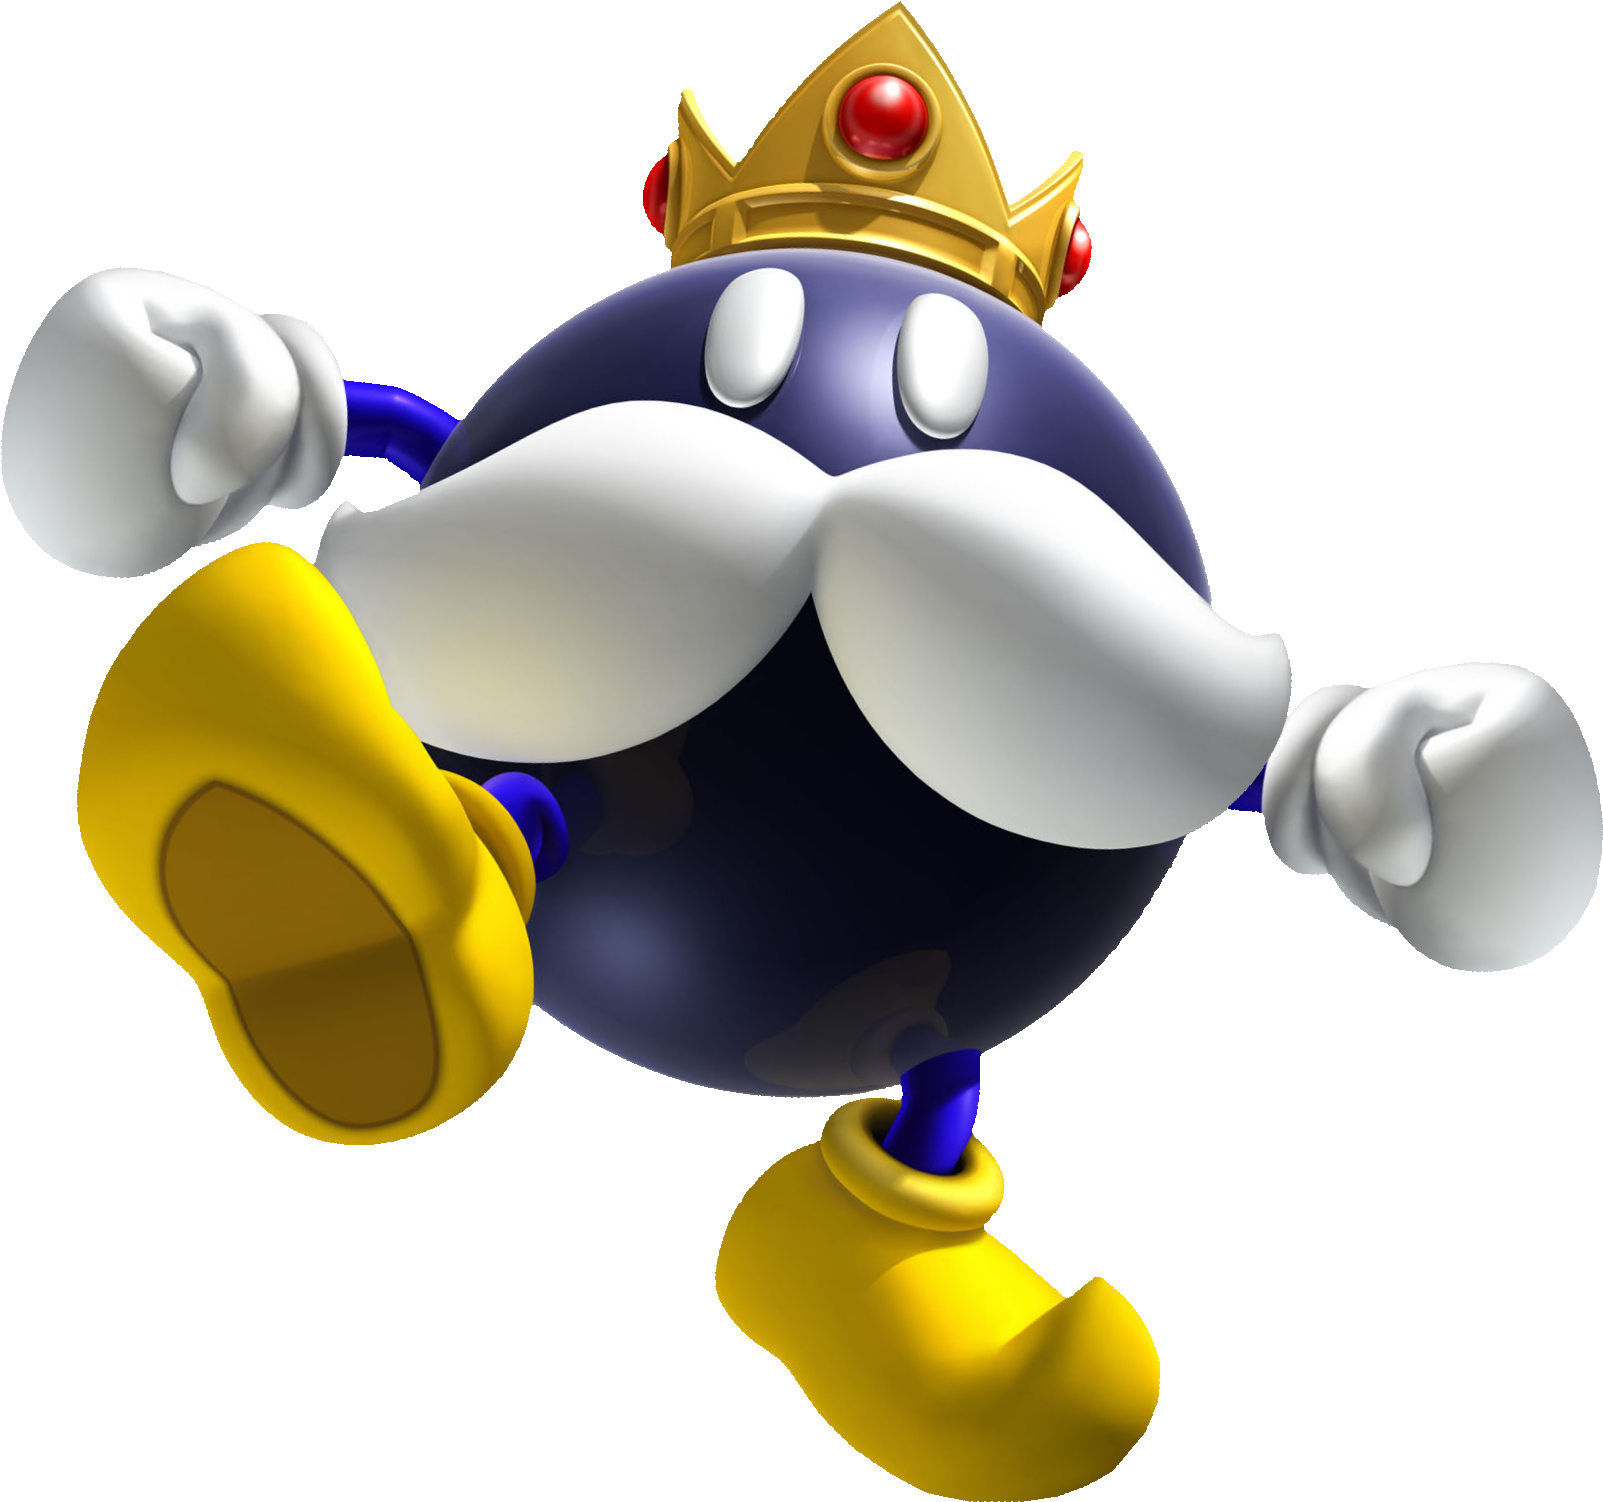 King Bob-omb - Mario Big Bob Omb (1631x1571)